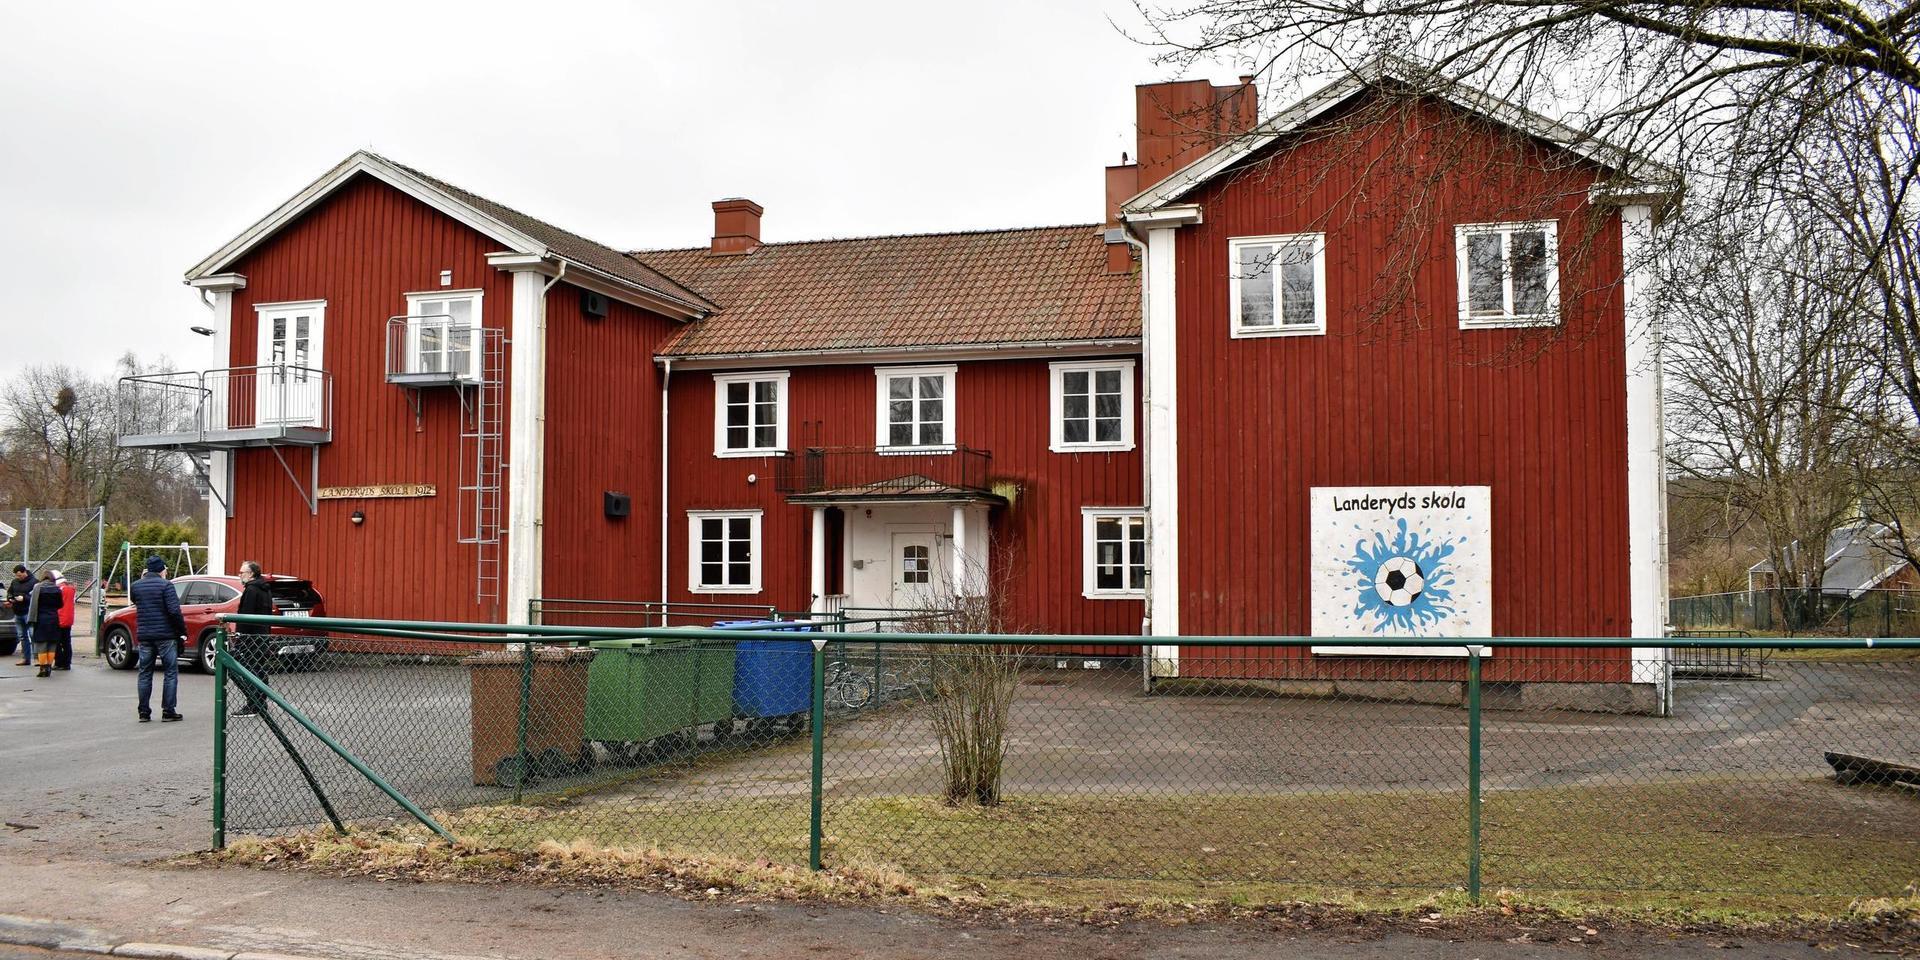 Landeryd ska få en helt nybyggd skola som ersätter den gamla byggnaden från 1912.